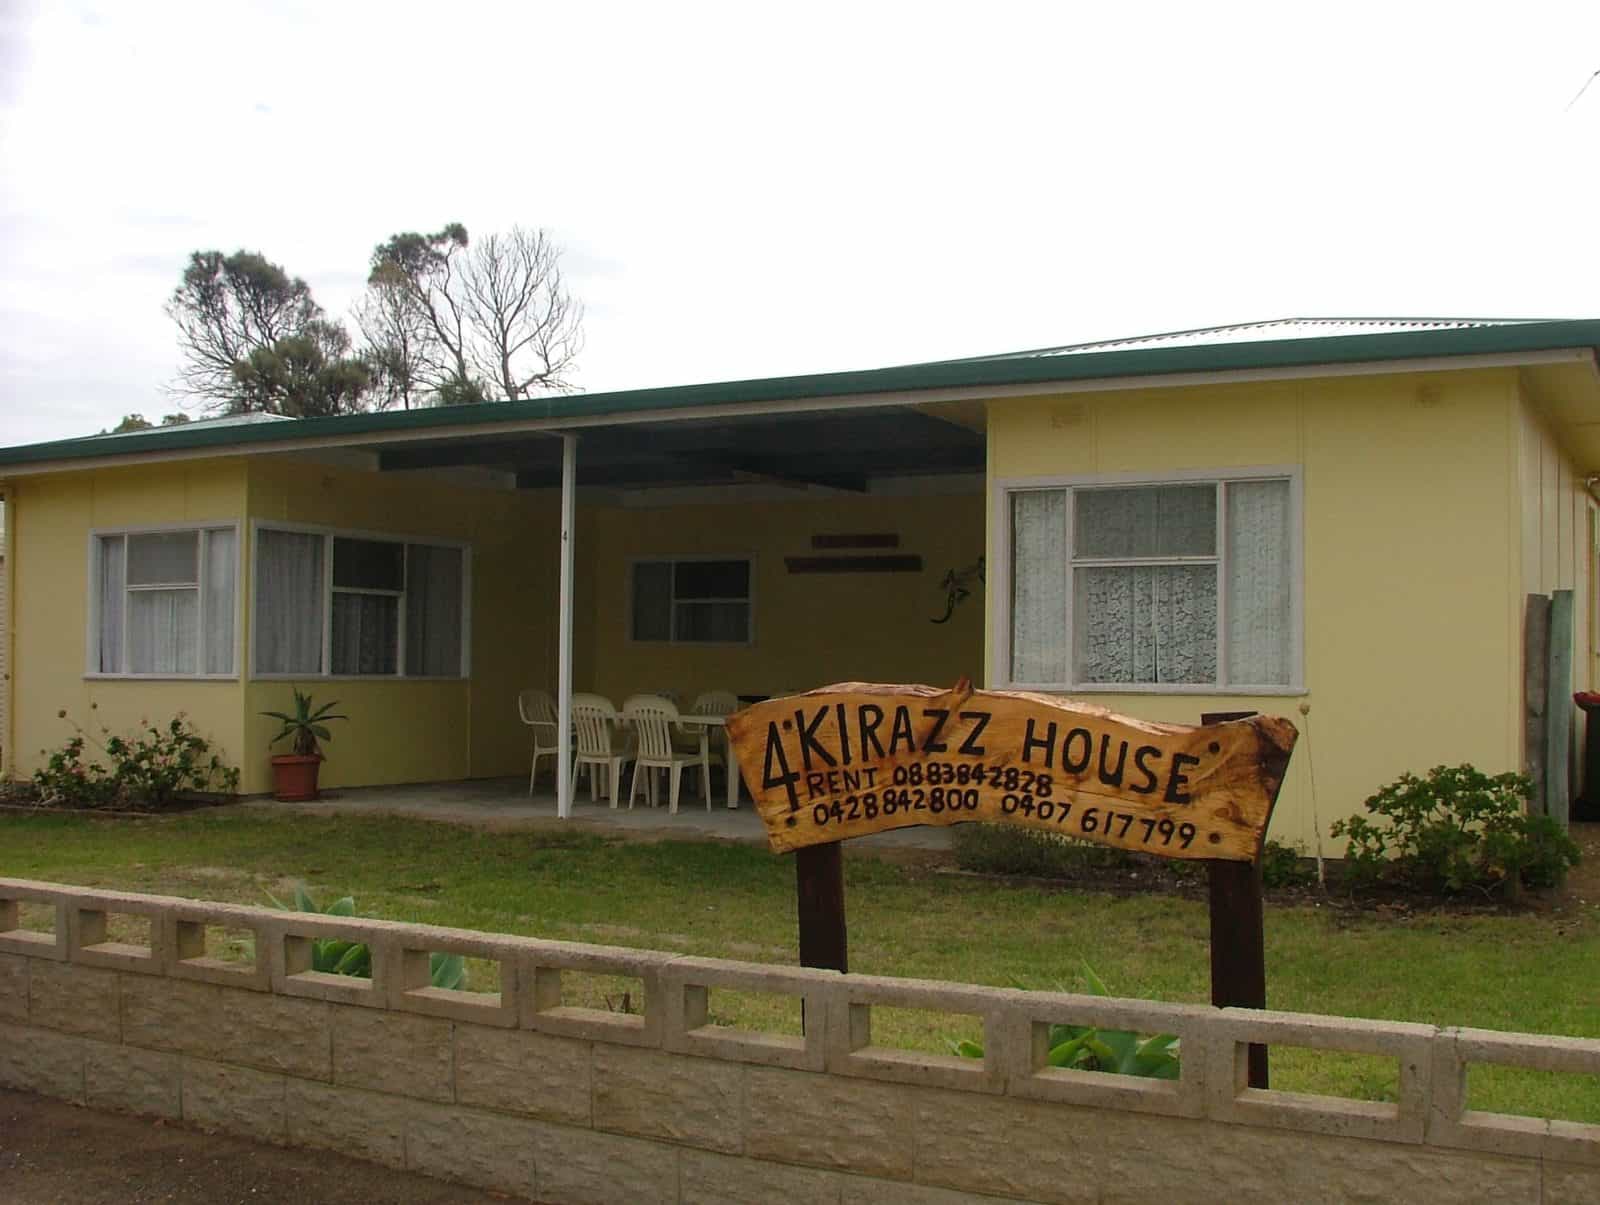 Kirazz House, Kingscote, Kangaroo Island